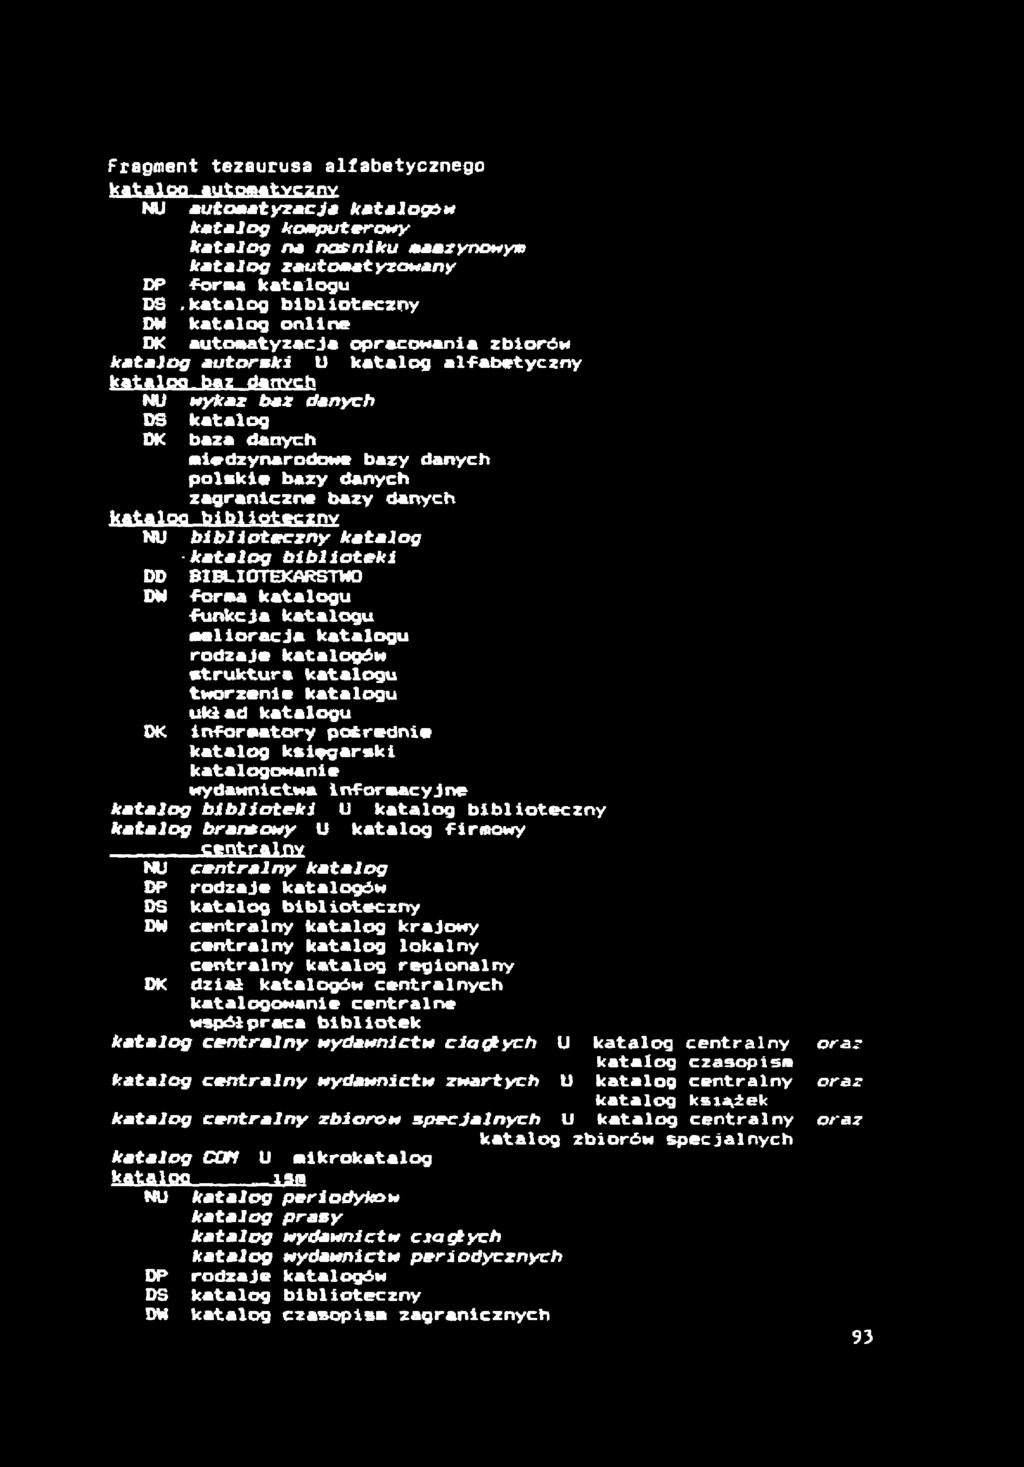 Fragment tezaurusa alfabetycznego kat>1 см tutomtvcznv NU automatyzacji katalogi** katalog komputerowy katalog na nośniku maazynowym katalog zautomatyzowany DP foraa katalogu DS.